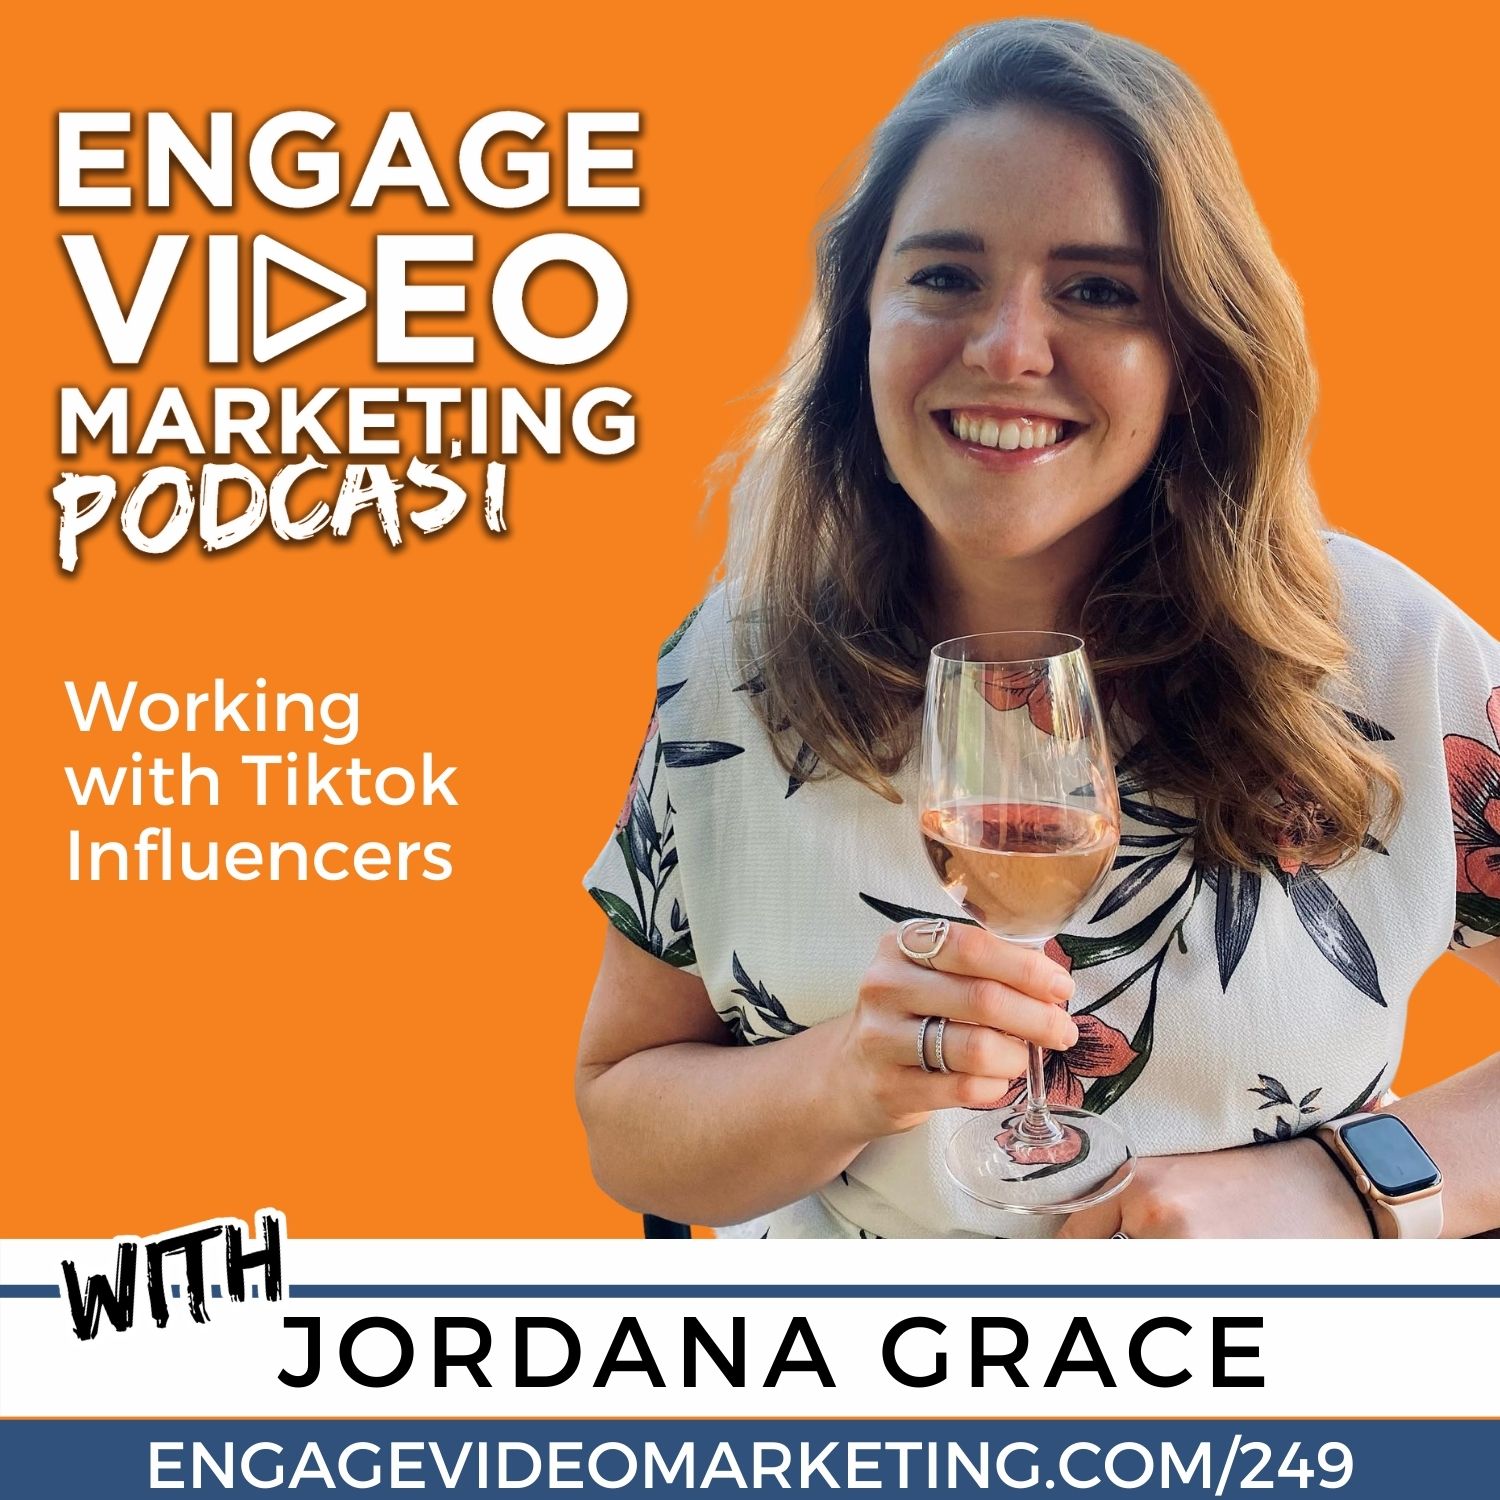 Working with Tiktok Influencers with Jordana Grace